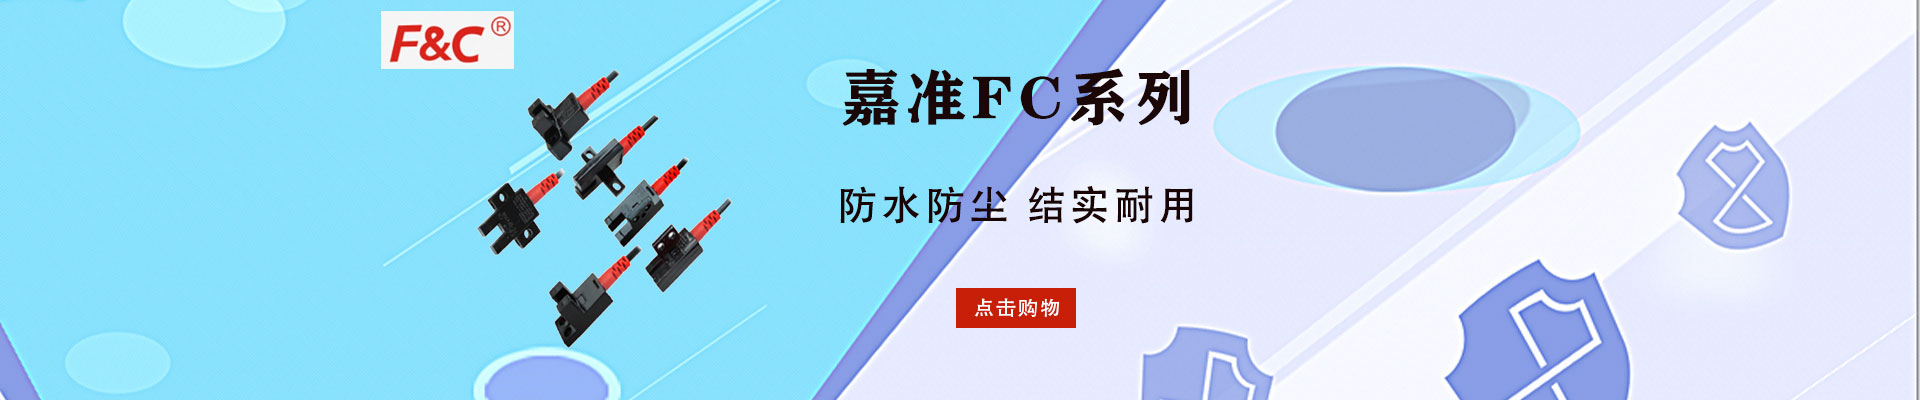 台湾嘉准F&C|